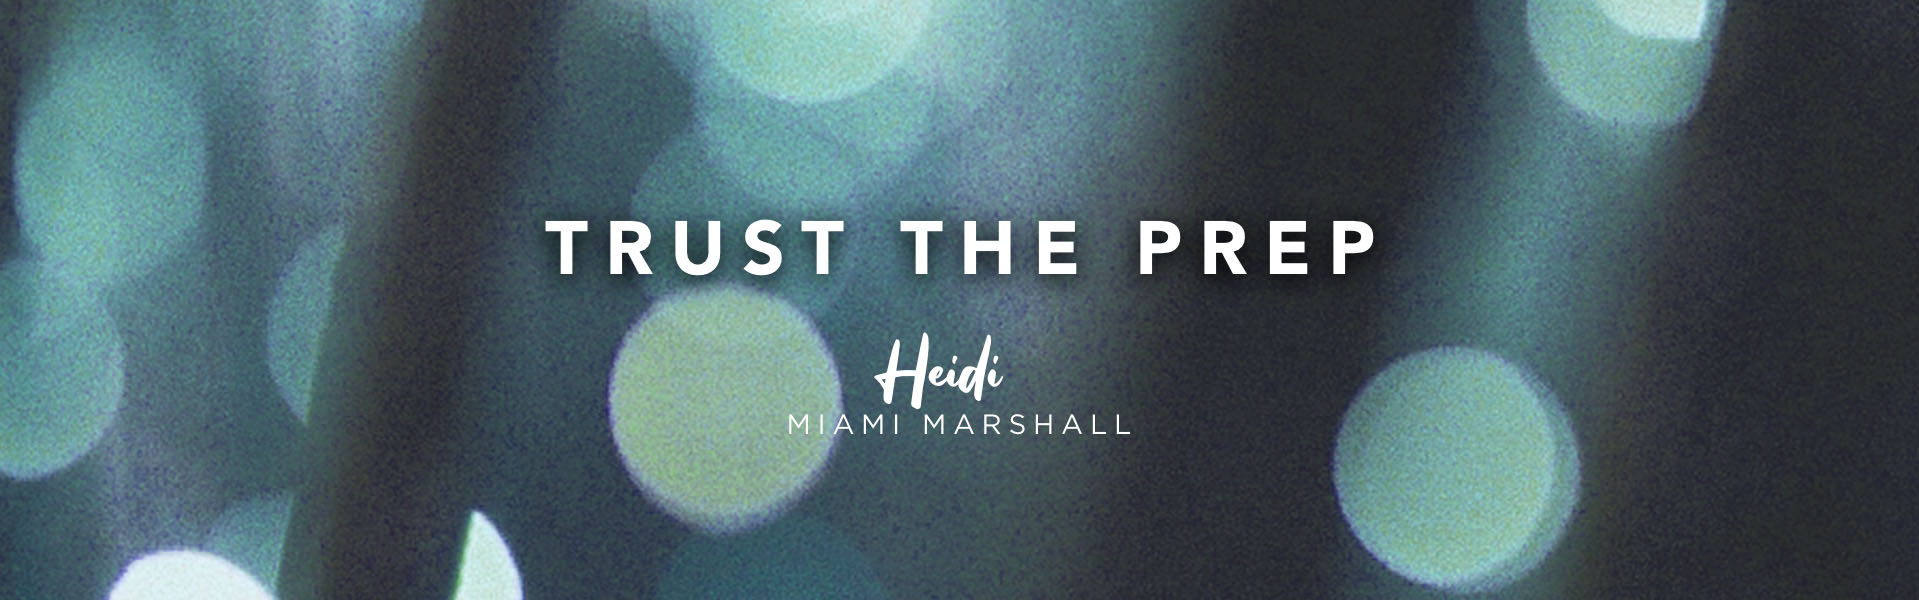 Acting coach Heidi Marshall says, Trust the prep